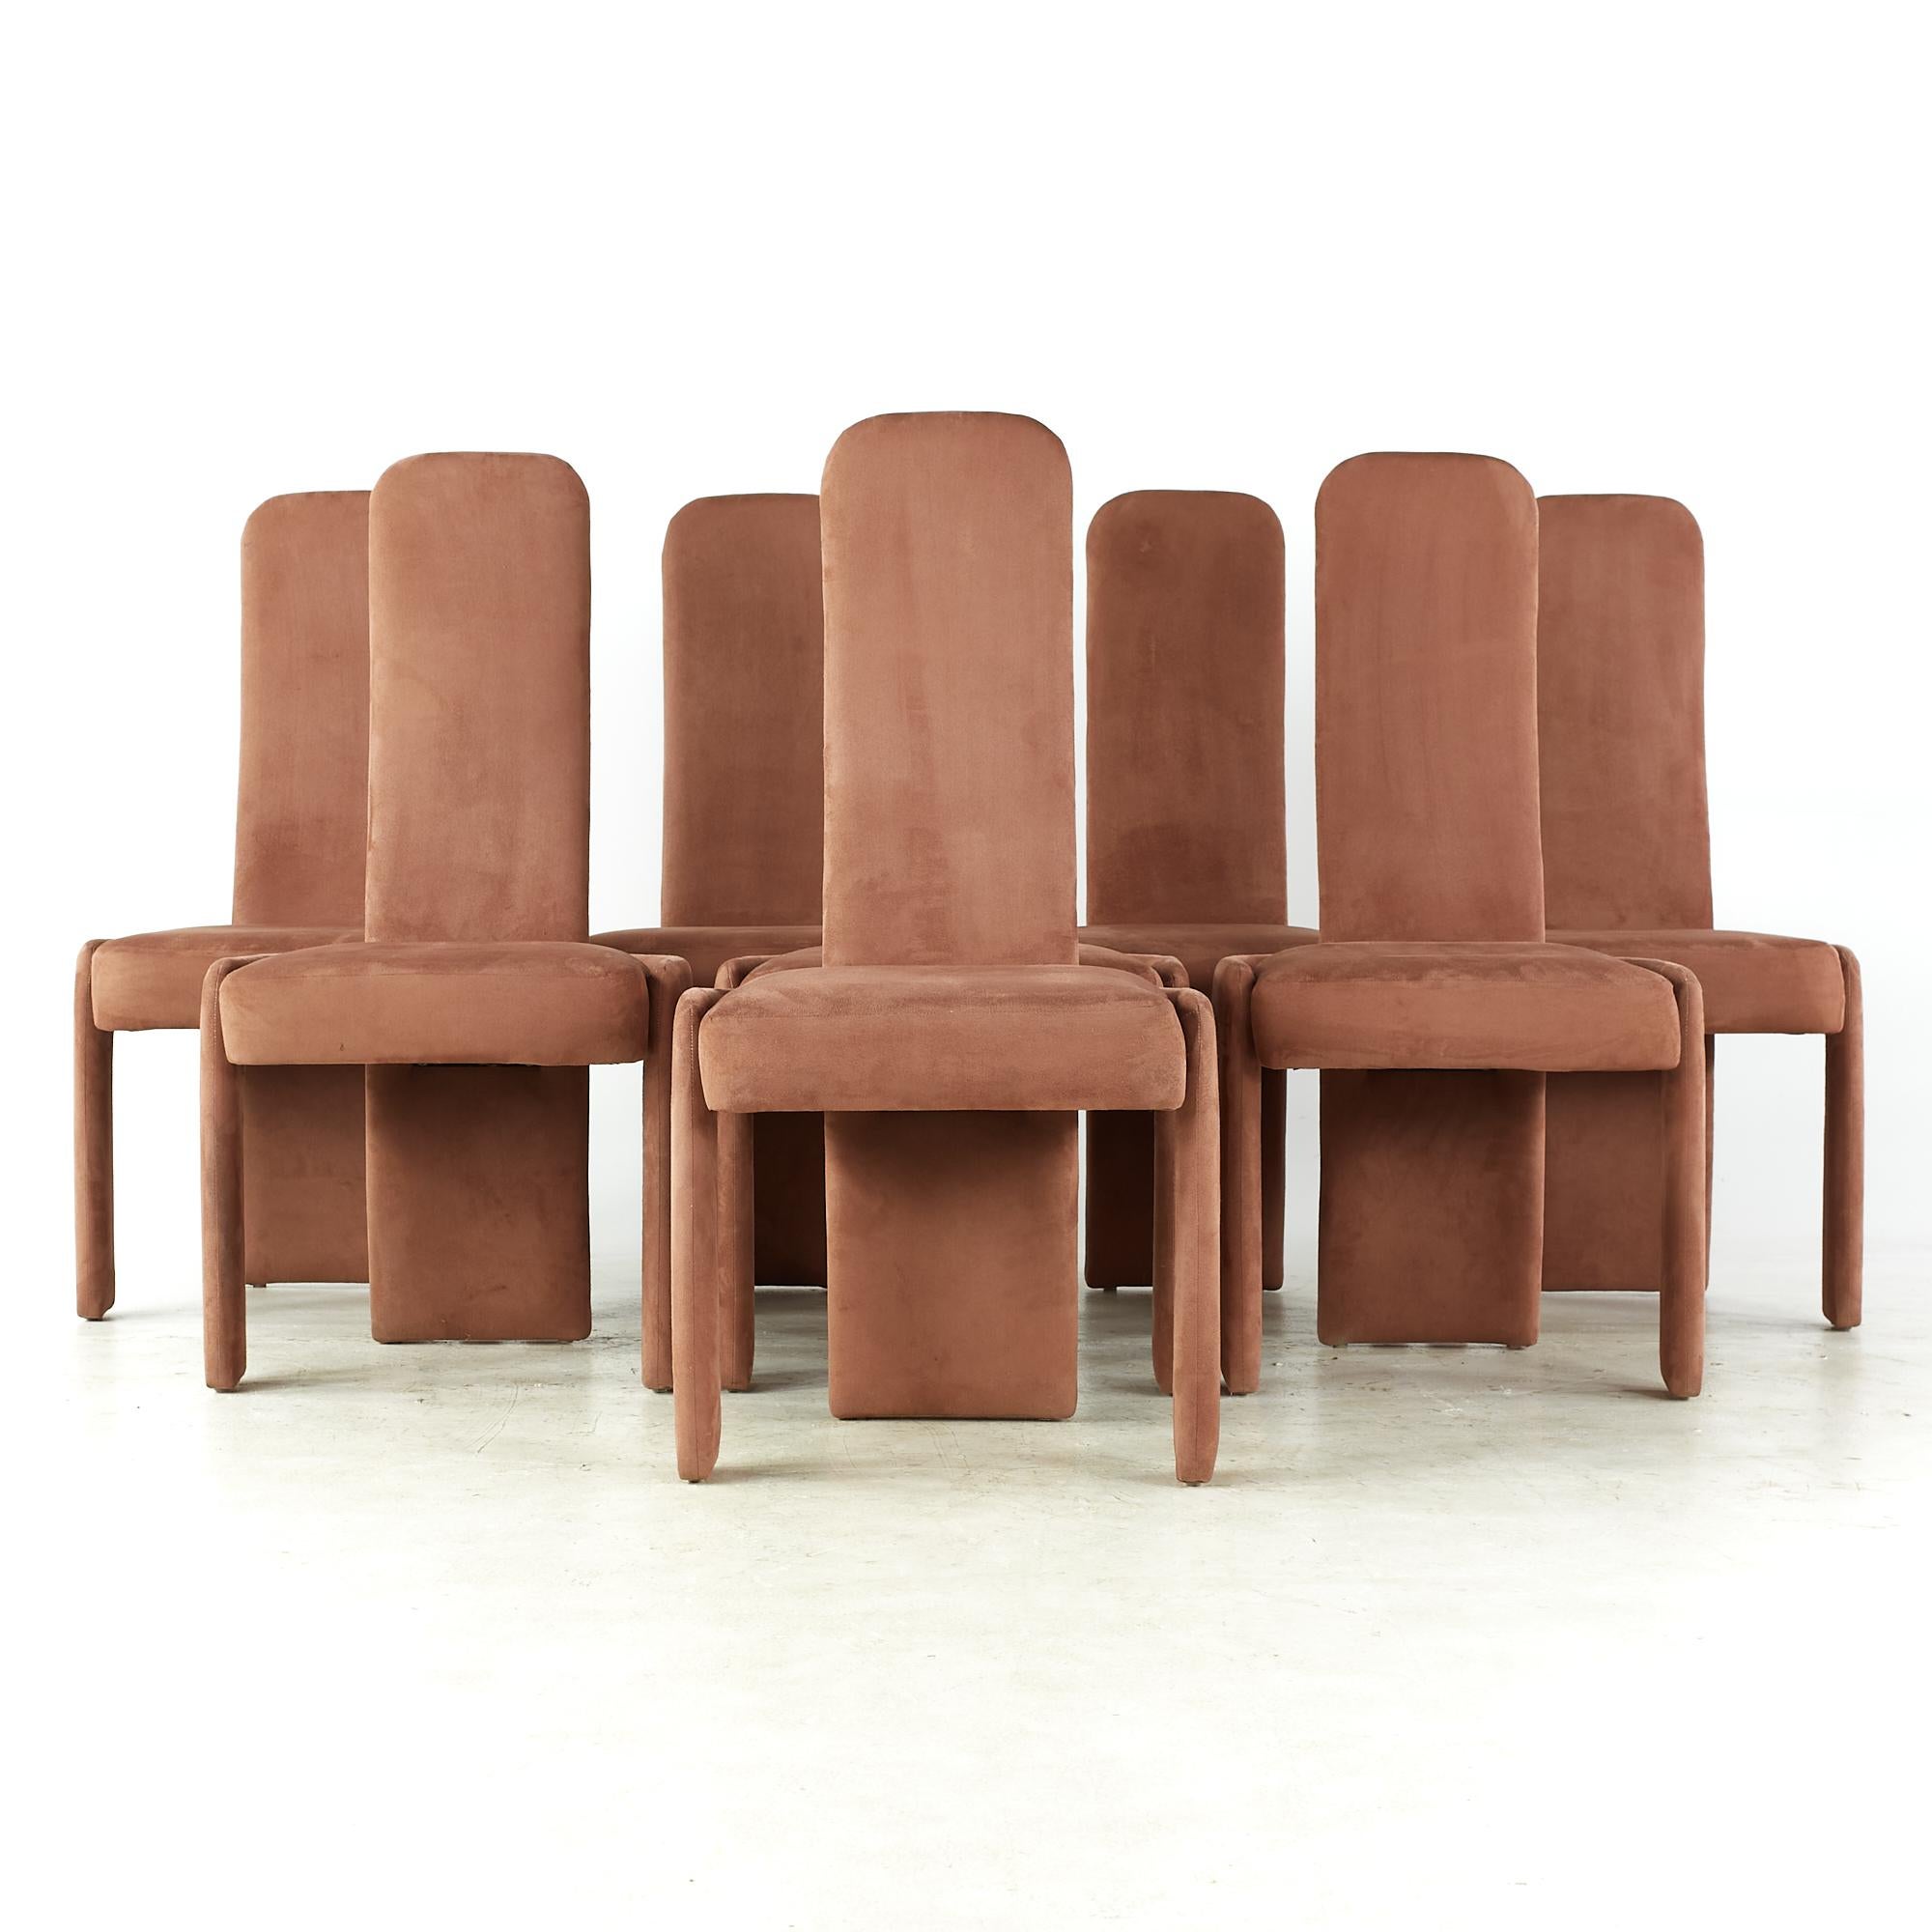 Pierre Cardin Mid Century Dining Chairs - Set of 8

Chaque chaise mesure : 21,25 de largeur x 22 de profondeur x 43 pouces de hauteur, avec une hauteur d'assise et un dégagement de 19,25 pouces.

Tous les meubles peuvent être achetés dans ce que